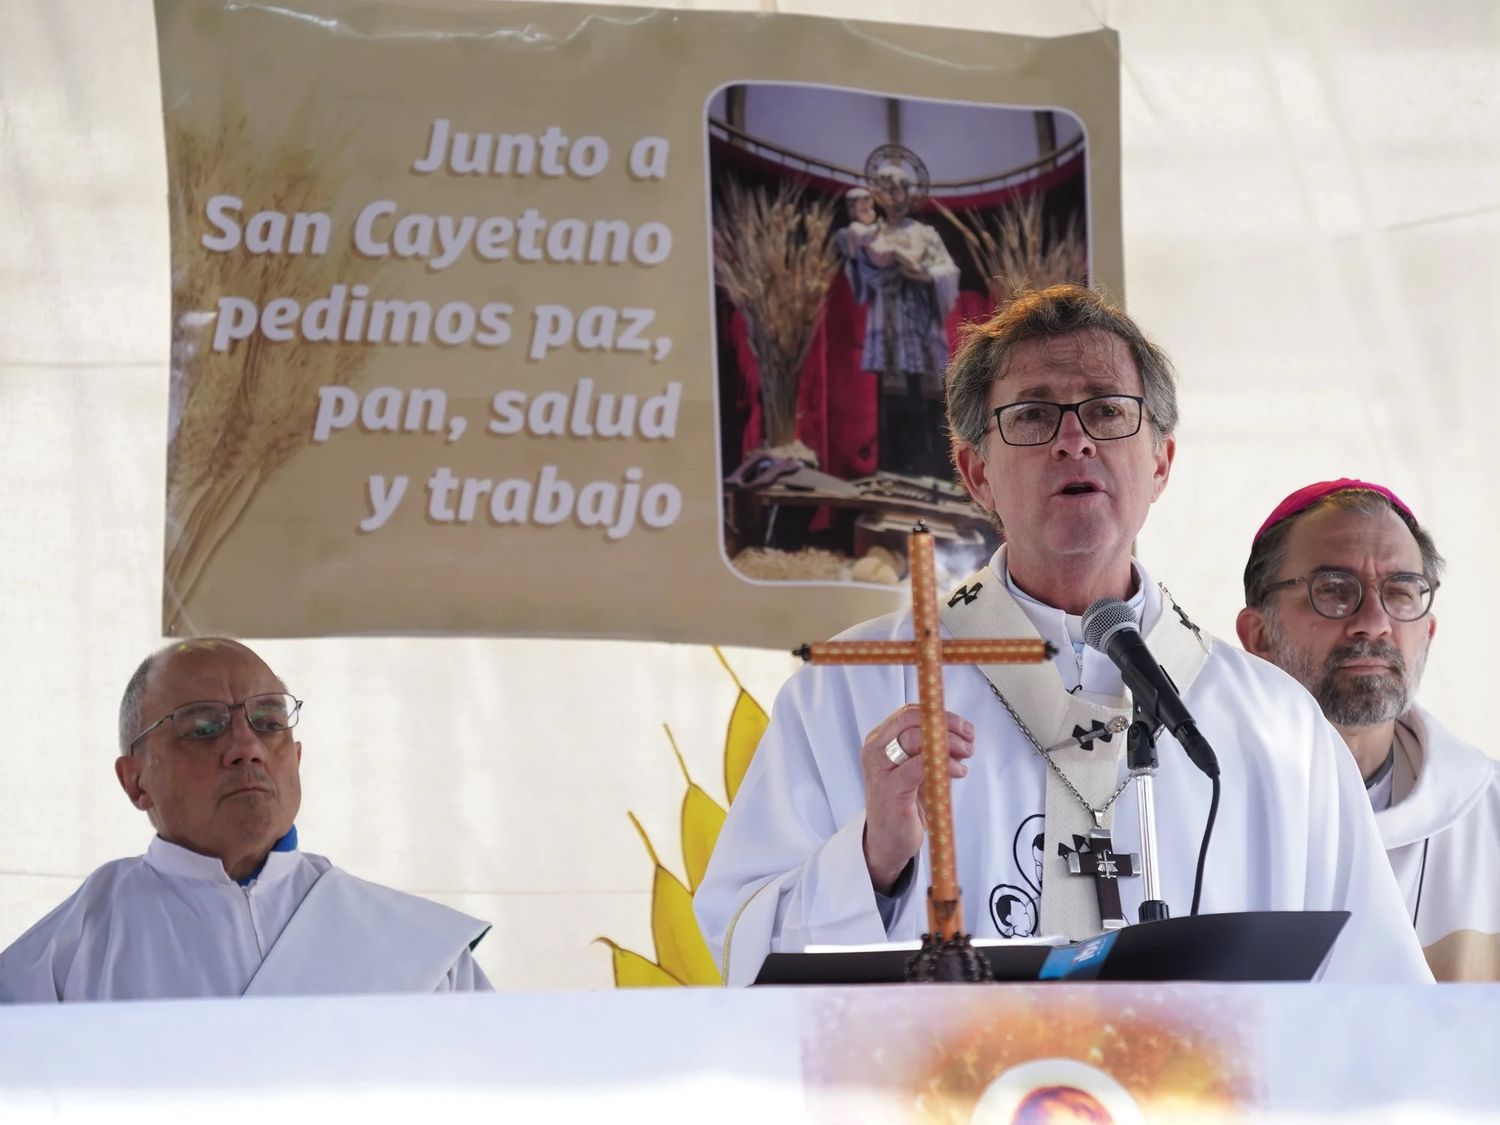 "No hay bolsillo que alcance" reclamó el arzobispo de Buenos Aires durante la misa por San Cayetano